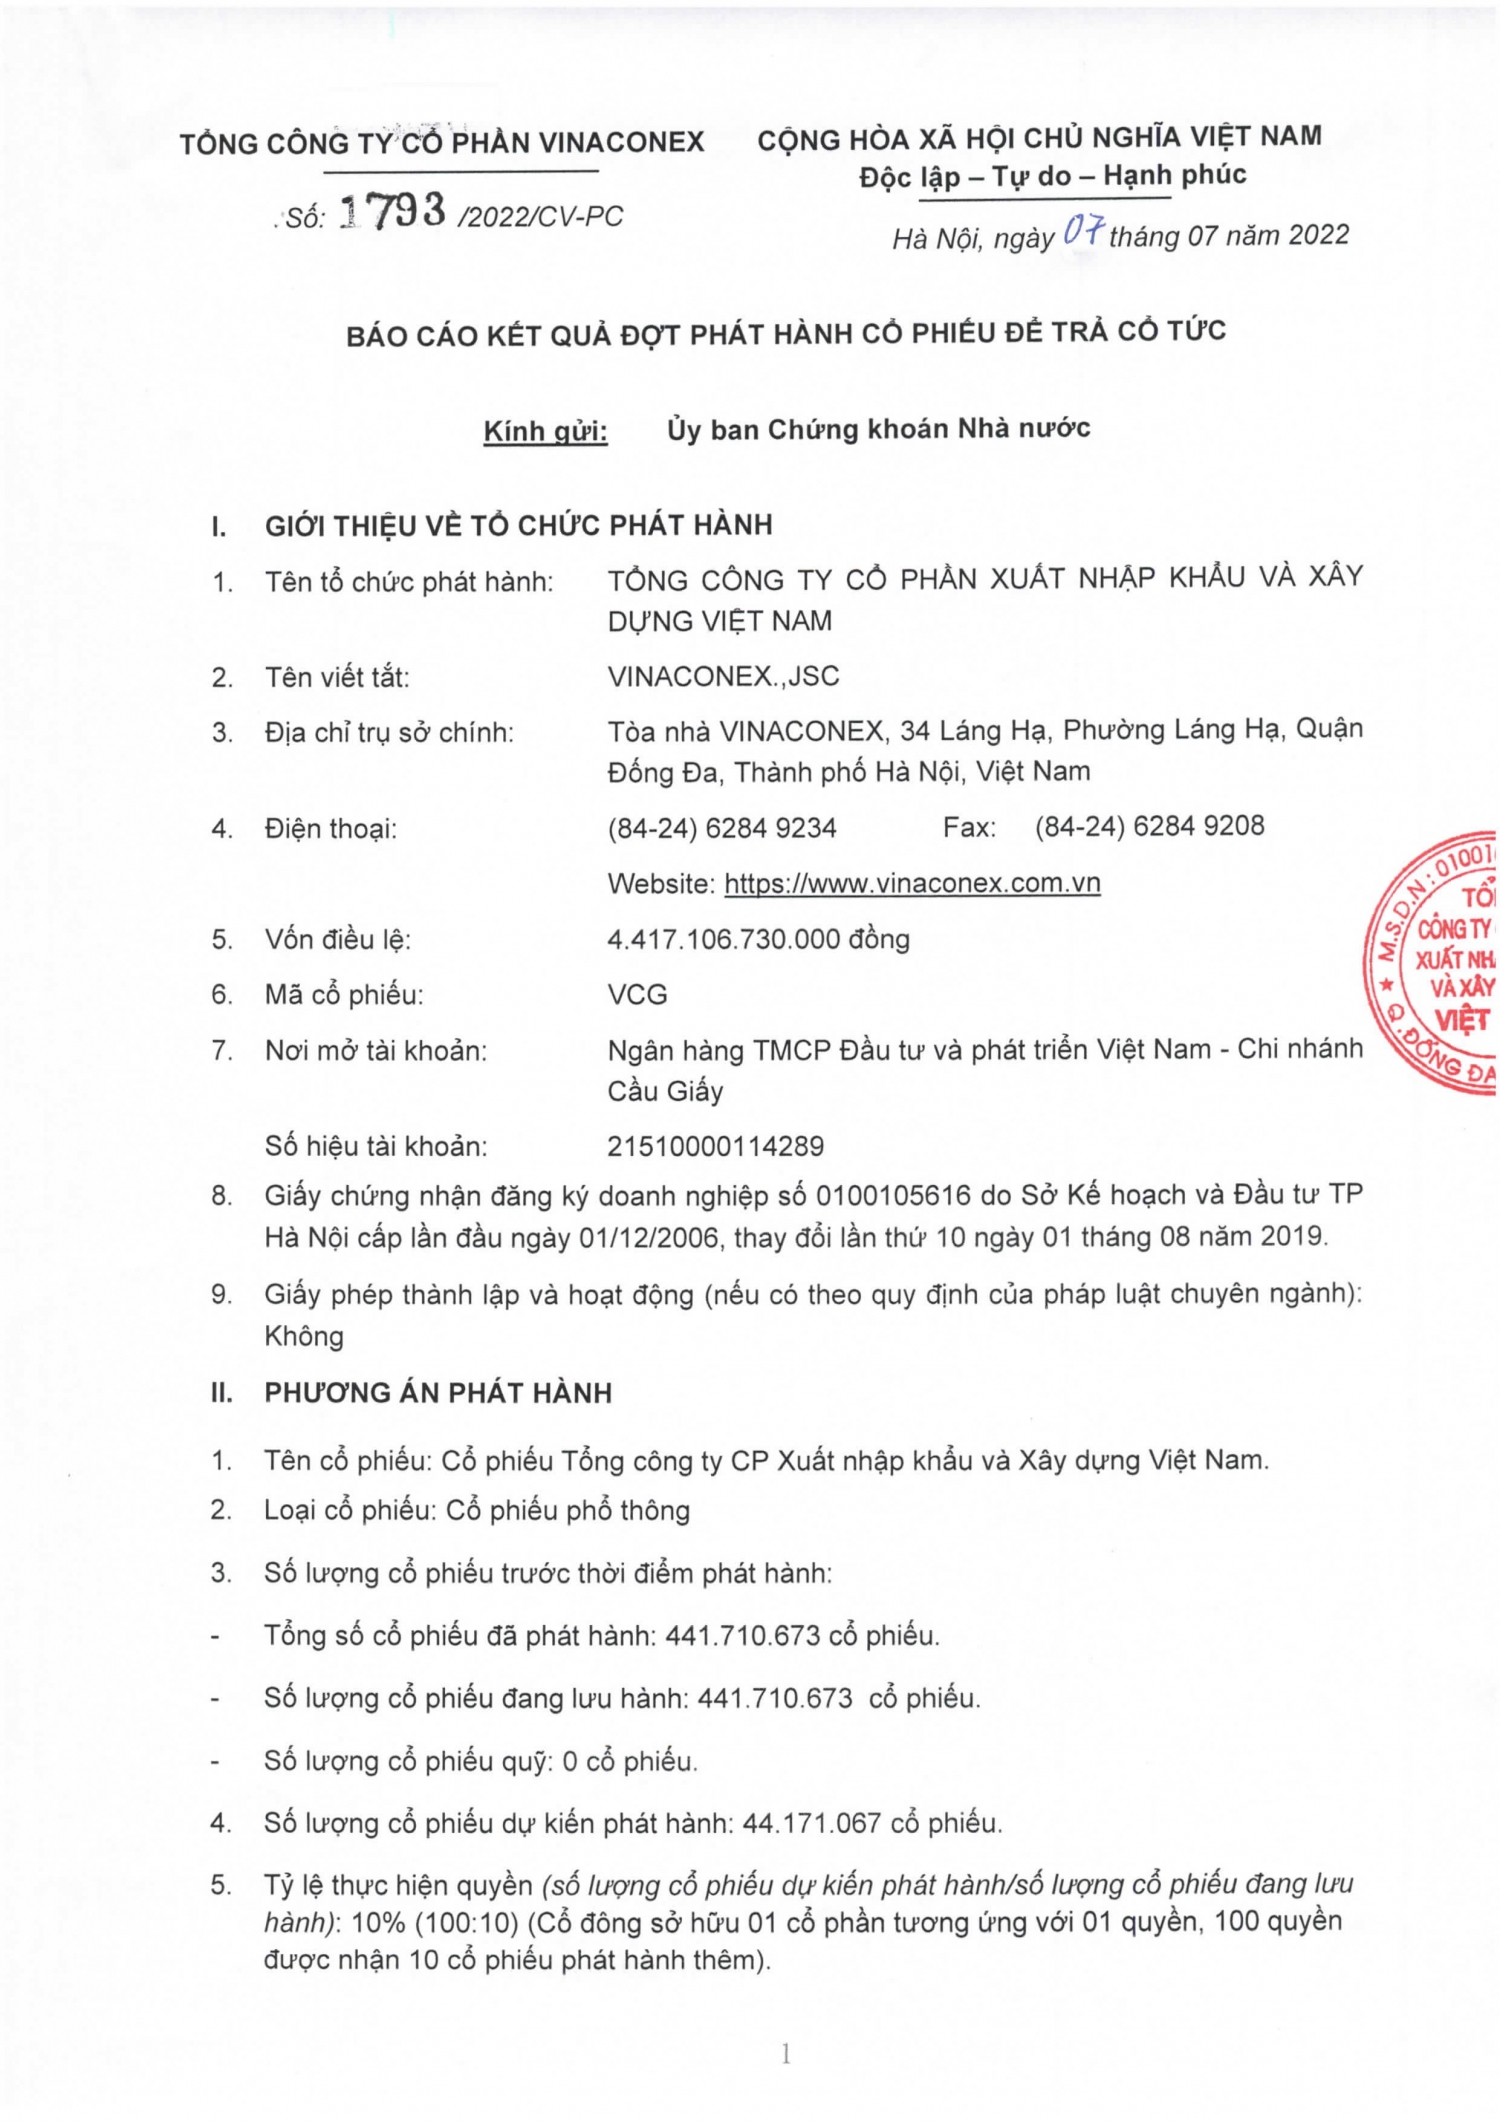 CV 1793 - Bao cao ket qua phat hanh co phieu tra co tuc_Page_1-2